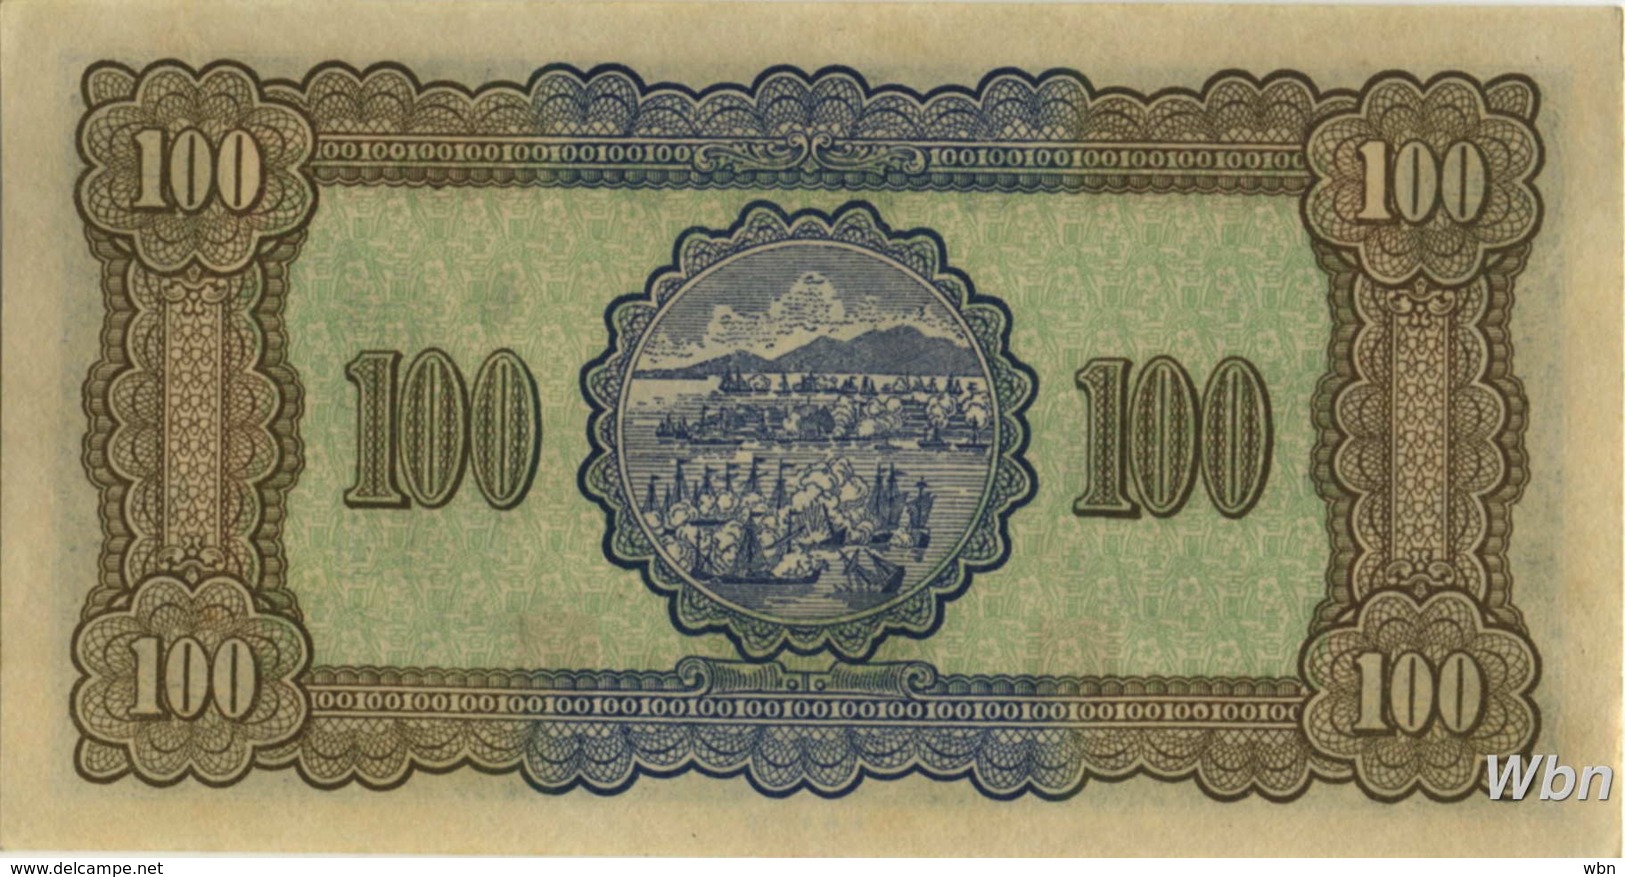 Taiwan 100 NT$ (P1941)  1947 -UNC- - Taiwan